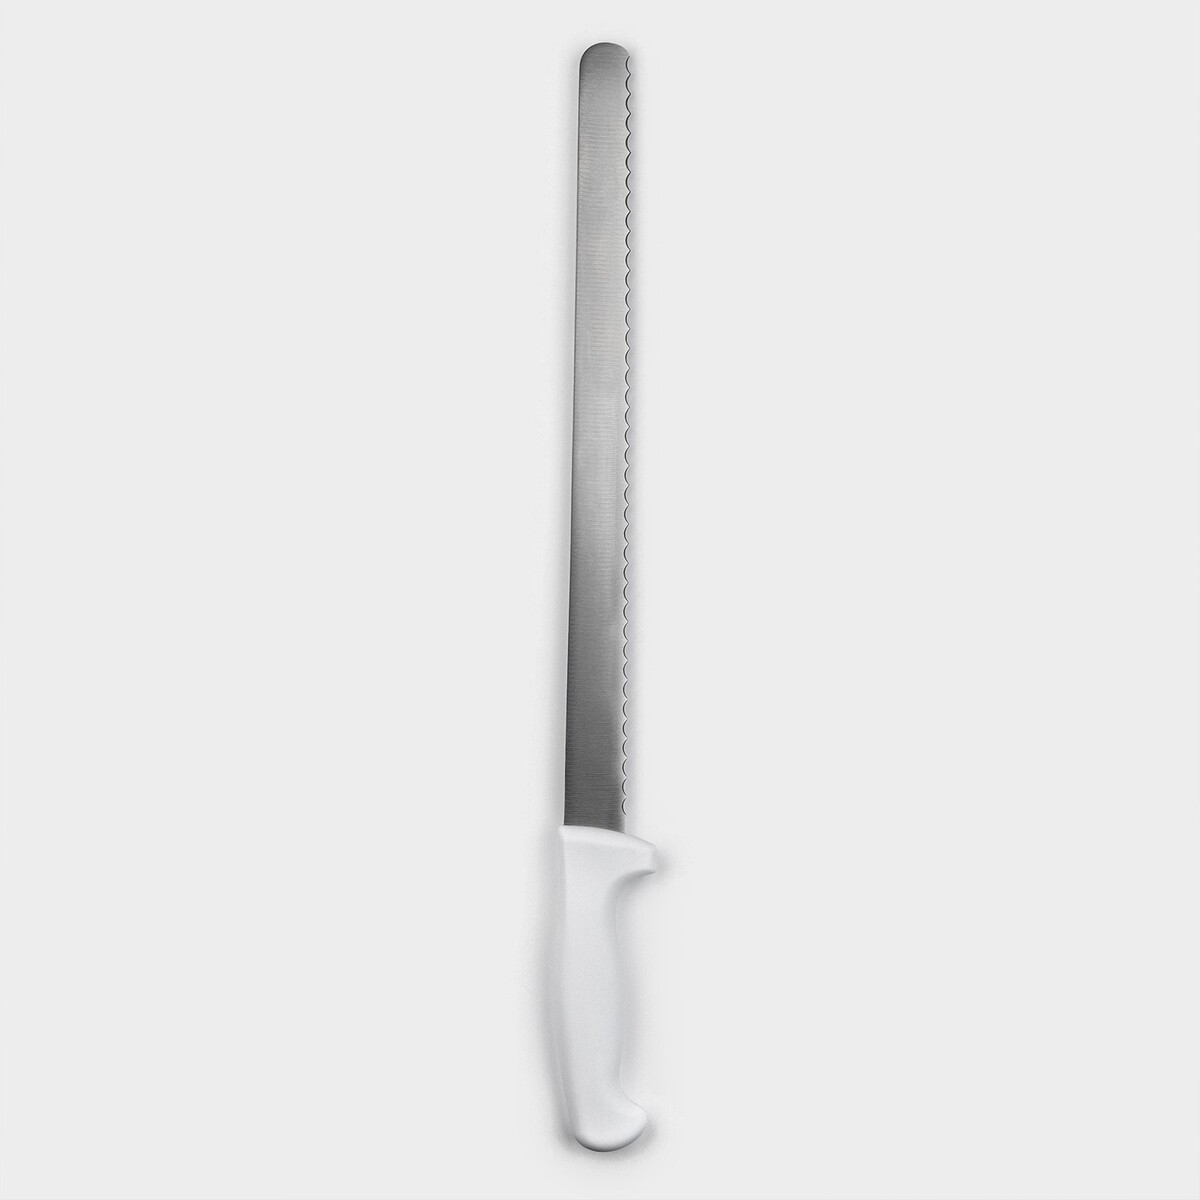 Нож для бисквита, рабочая поверхность 34 см, крупные зубчики нож для бисквита длина лезвия 35 см крупные зубцы ручка дерево